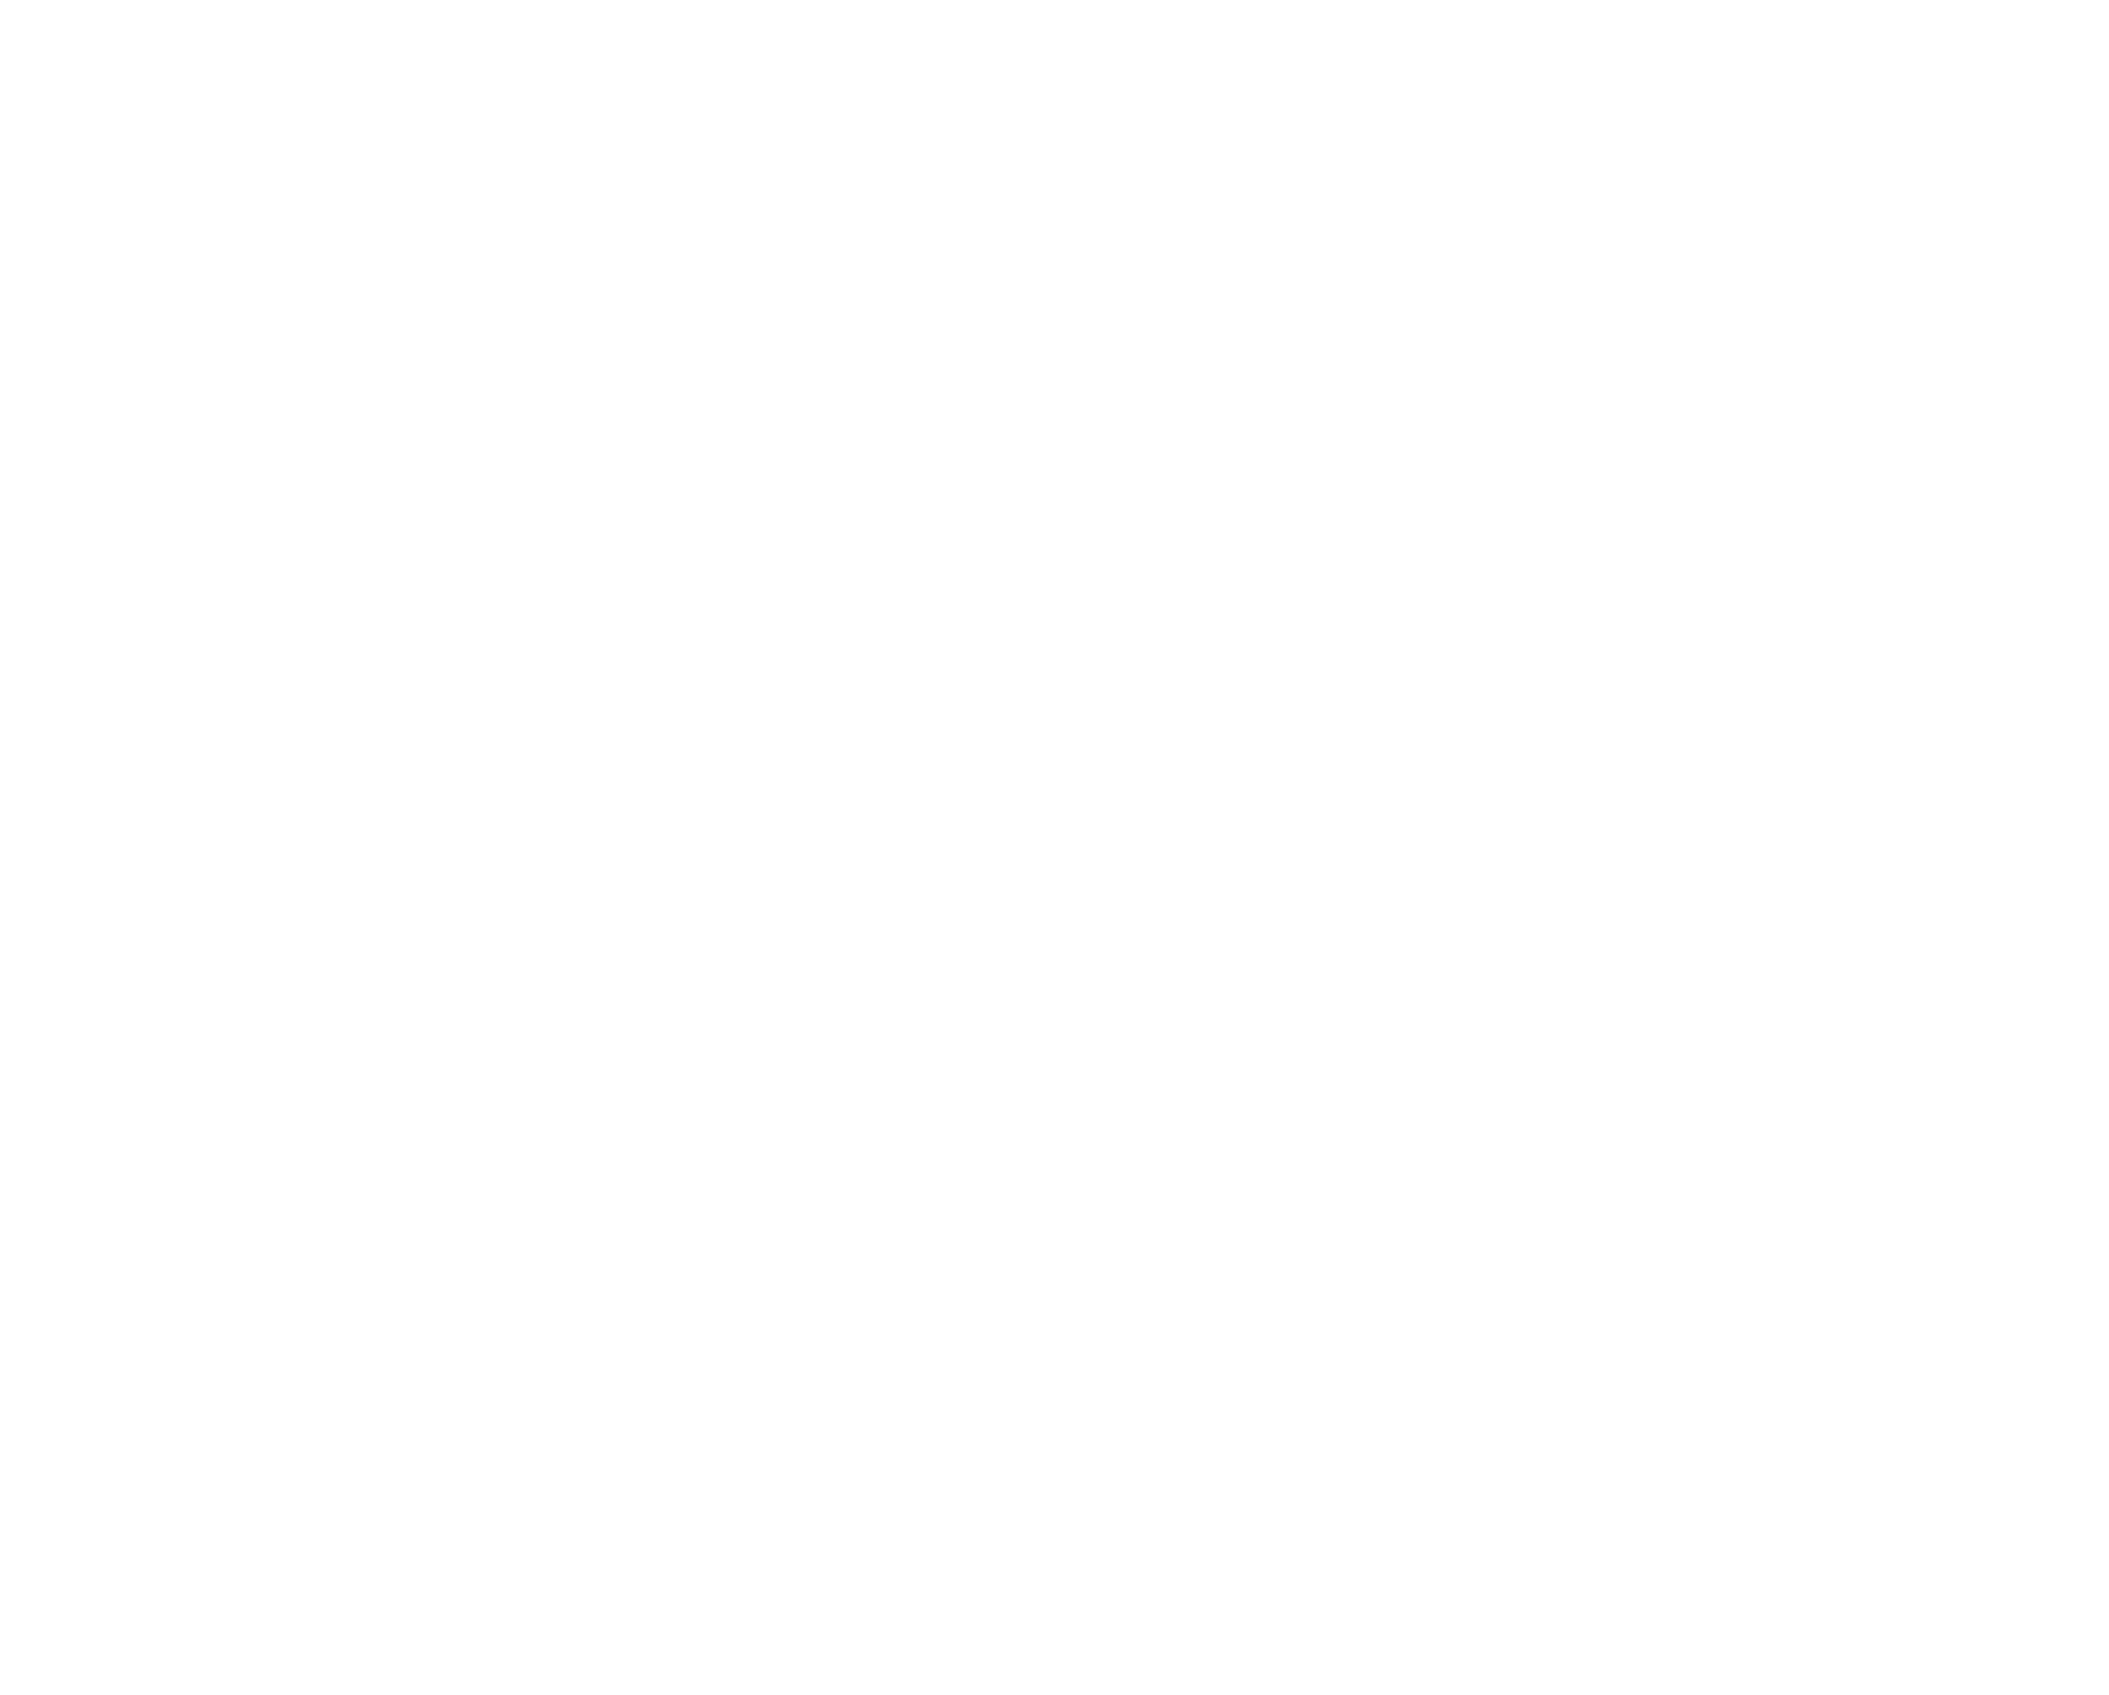 South Savour